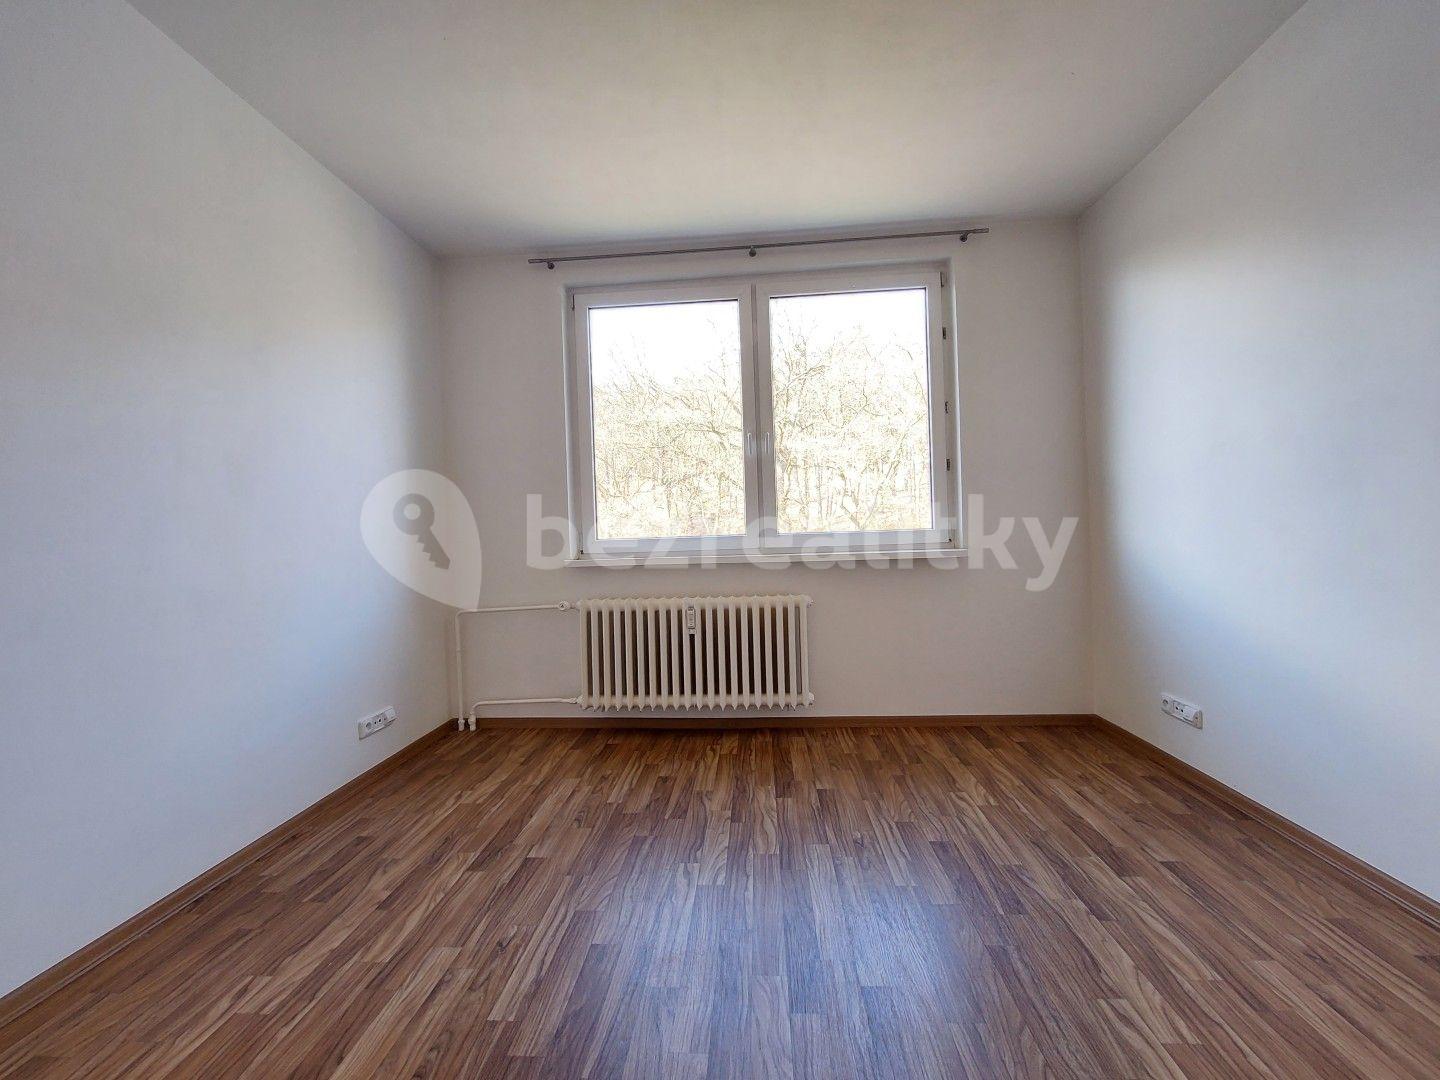 3 bedroom flat for sale, 65 m², Na Vyhlídce, Klášterec nad Ohří, Ústecký Region